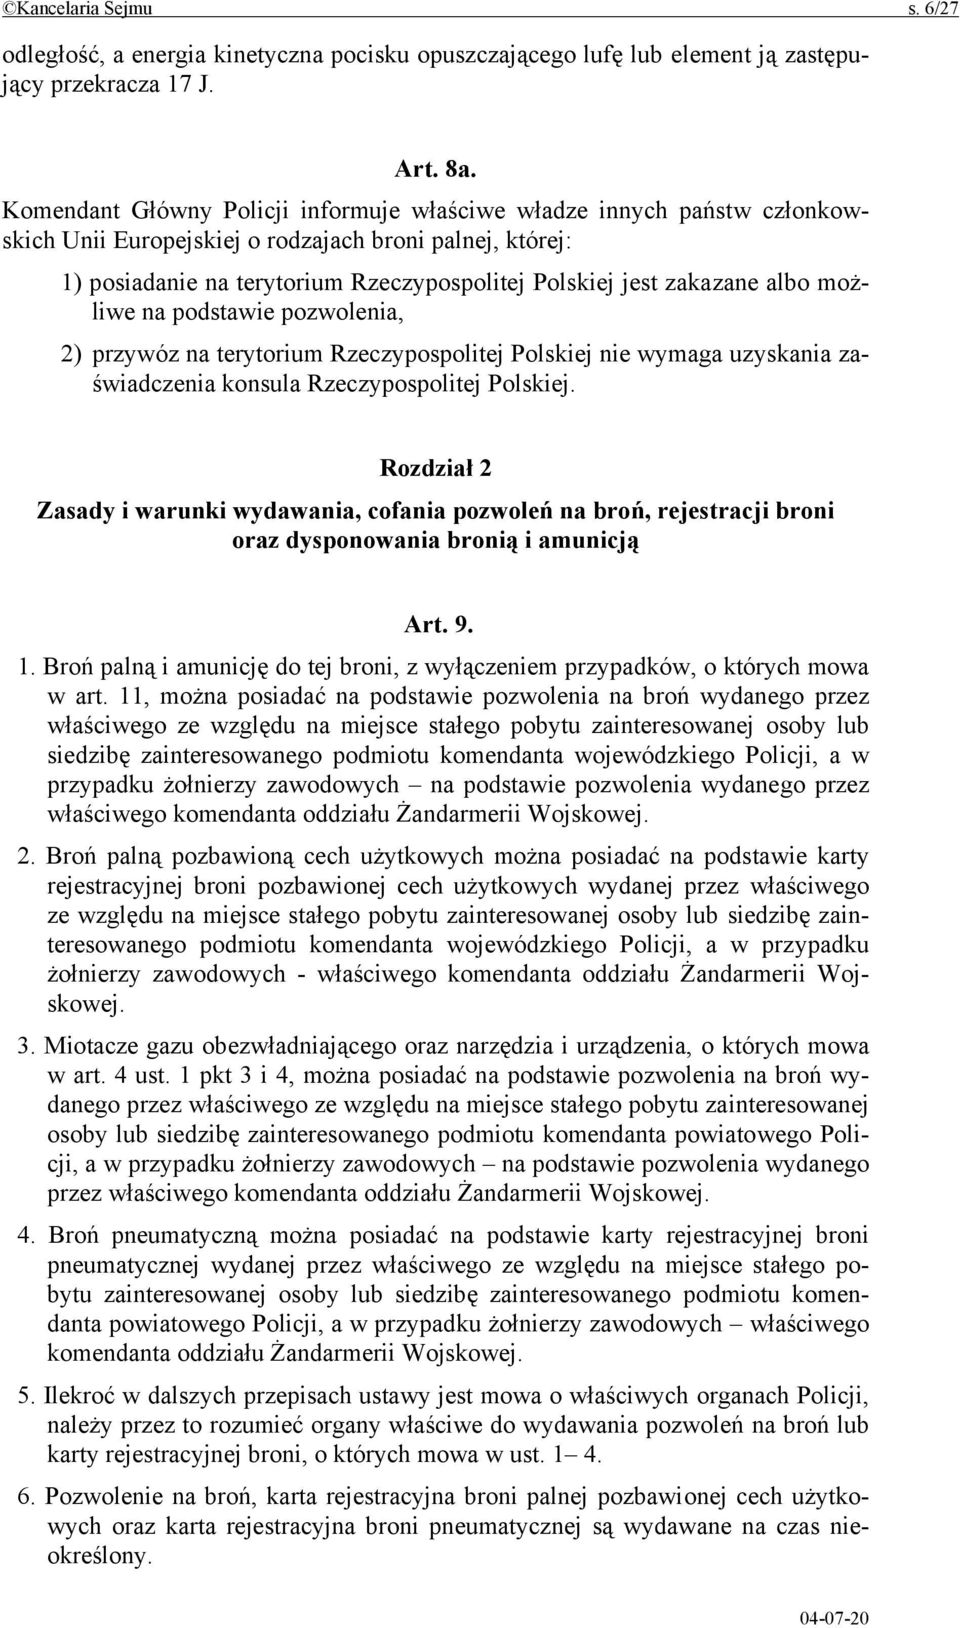 albo możliwe na podstawie pozwolenia, 2) przywóz na terytorium Rzeczypospolitej Polskiej nie wymaga uzyskania zaświadczenia konsula Rzeczypospolitej Polskiej.